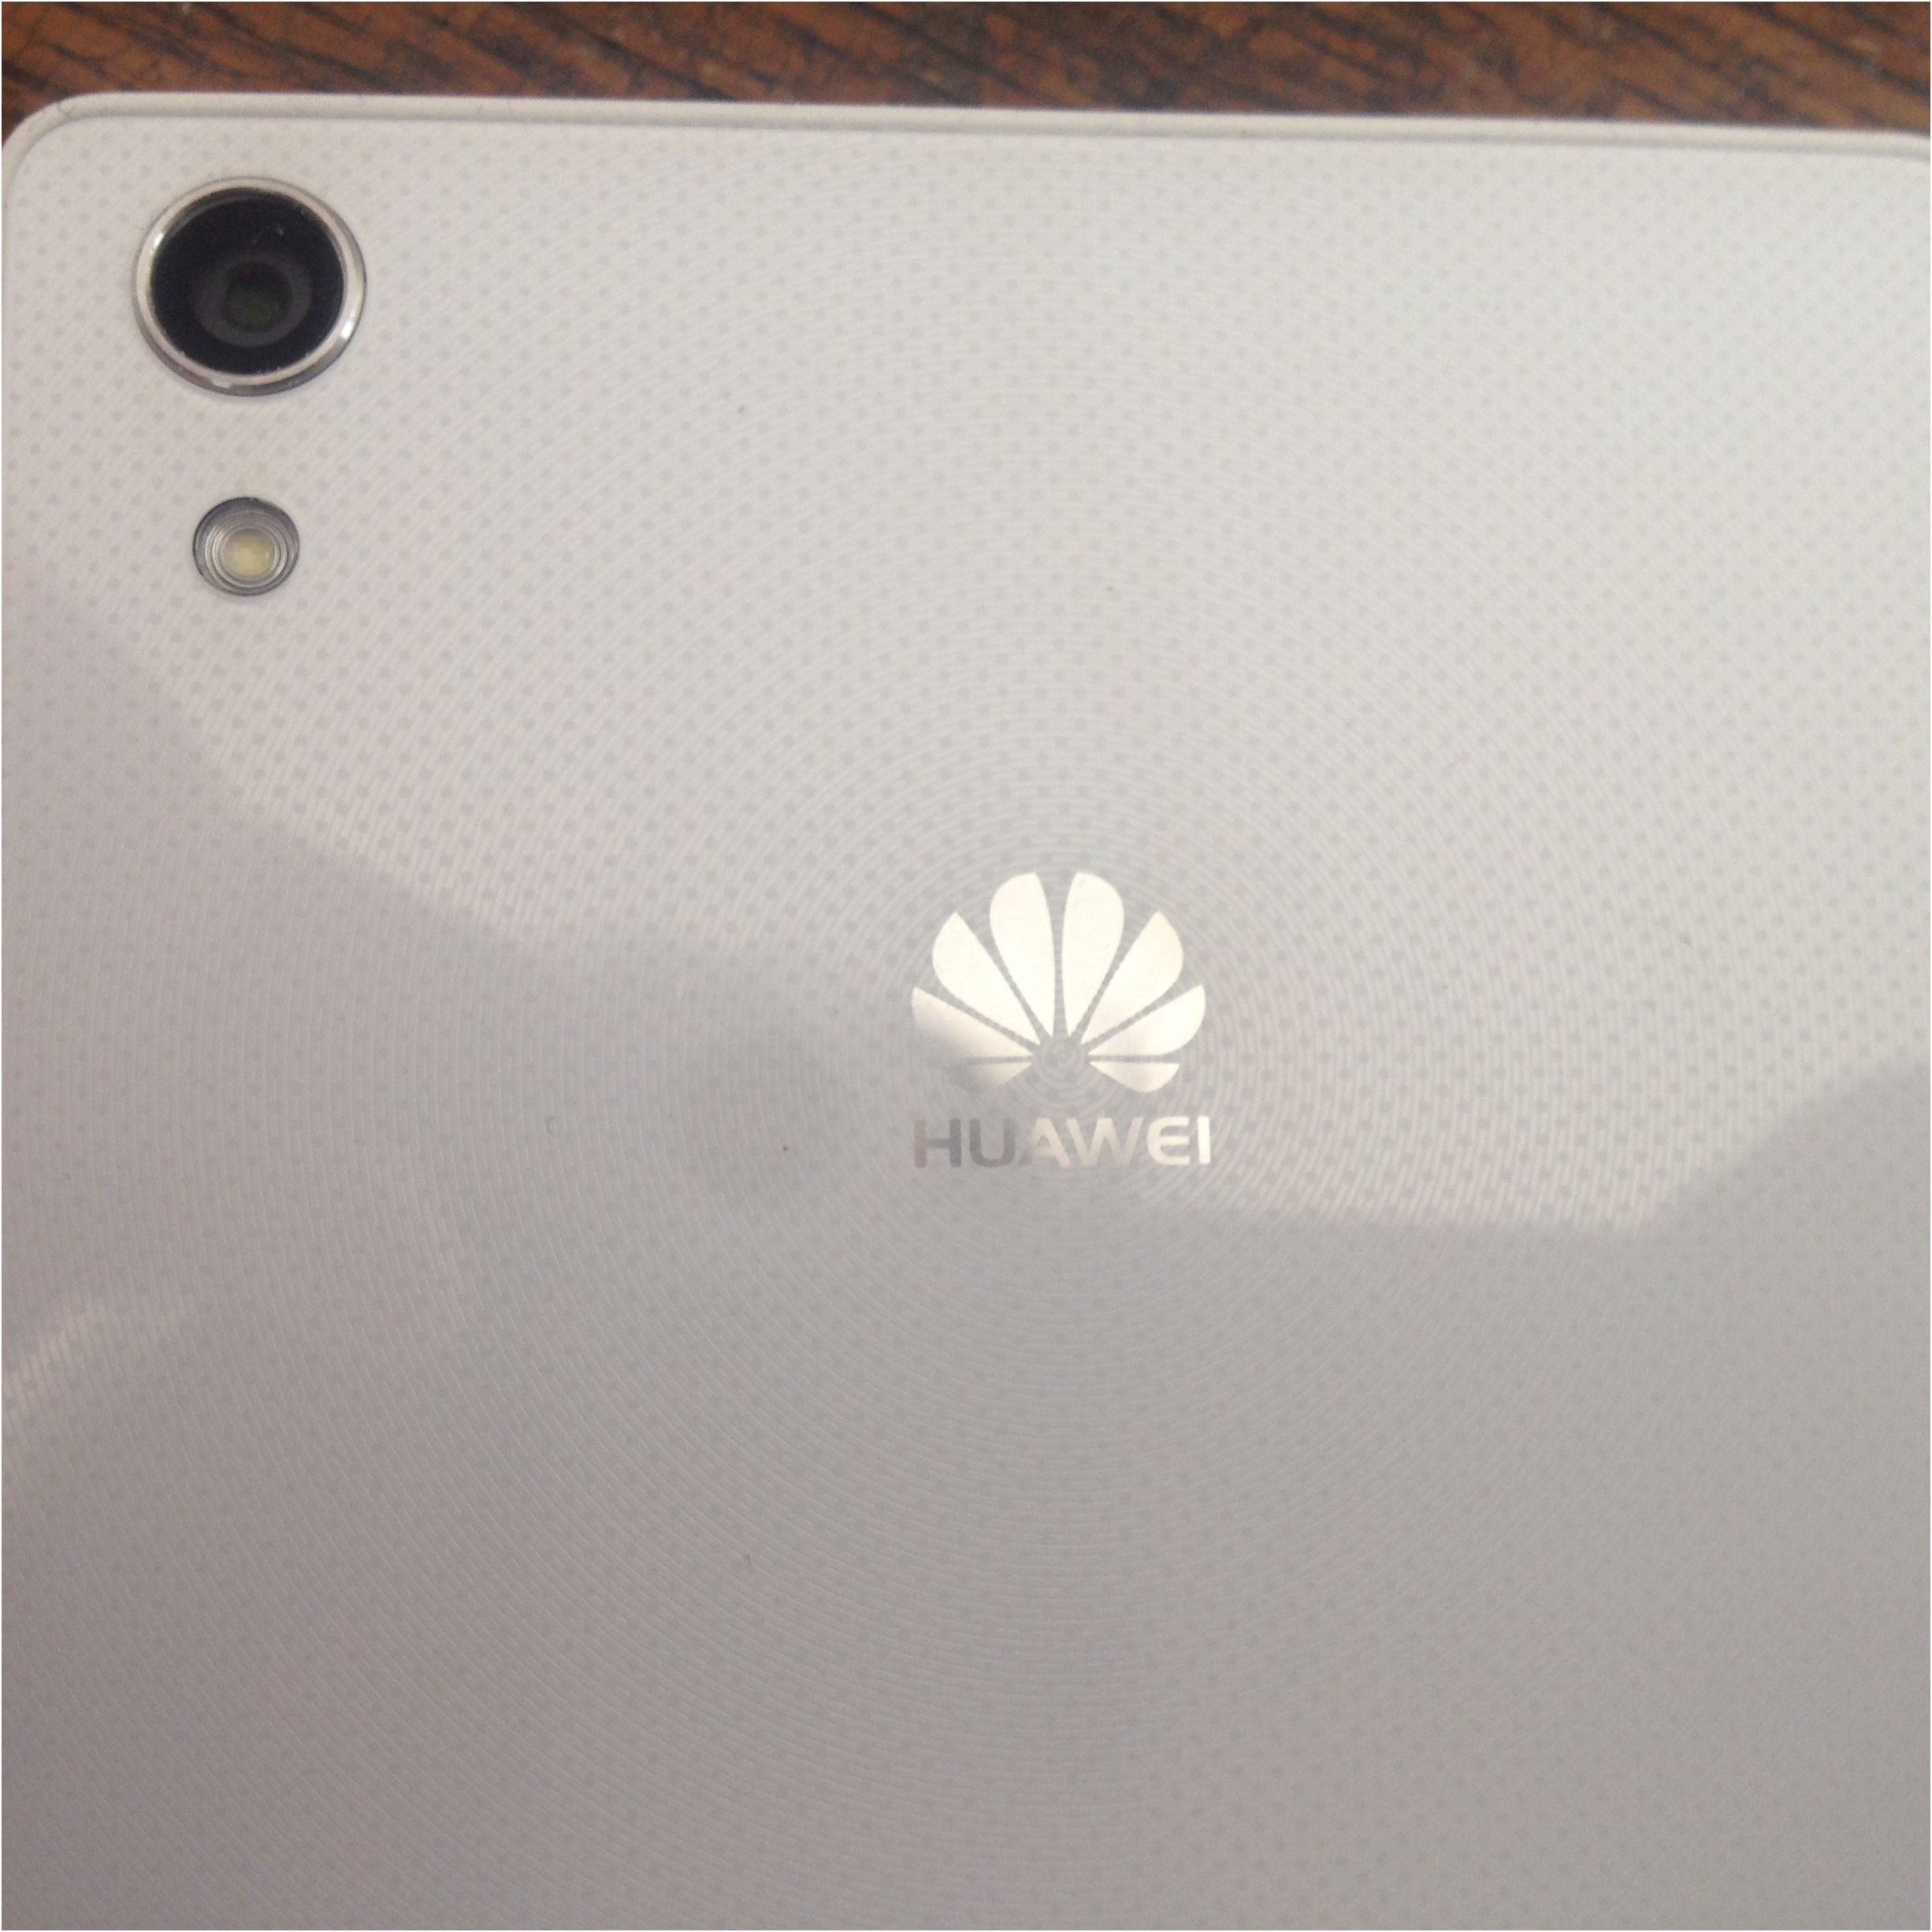 Обзор Huawei Ascend P7: китайский флагман с глобальными амбициями